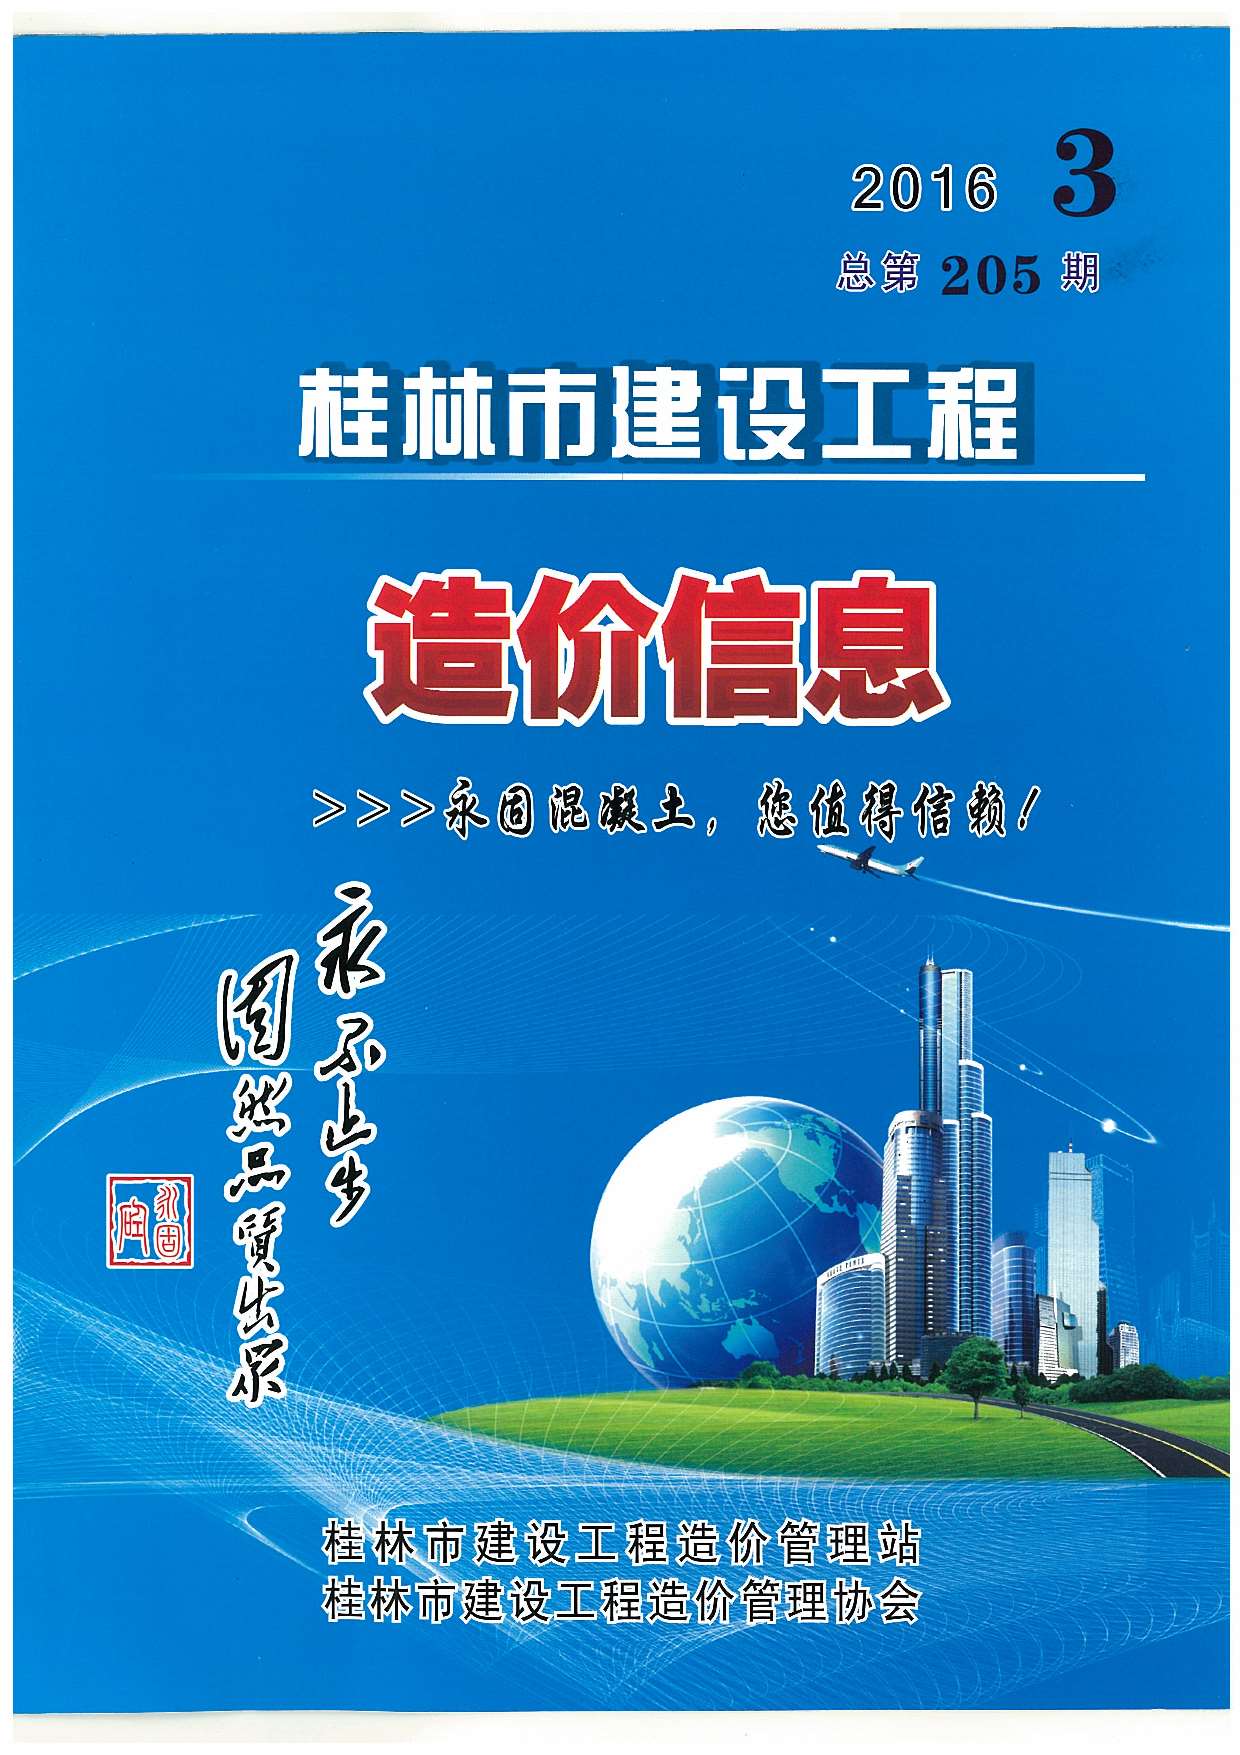 桂林市2016年3月建设工程造价信息